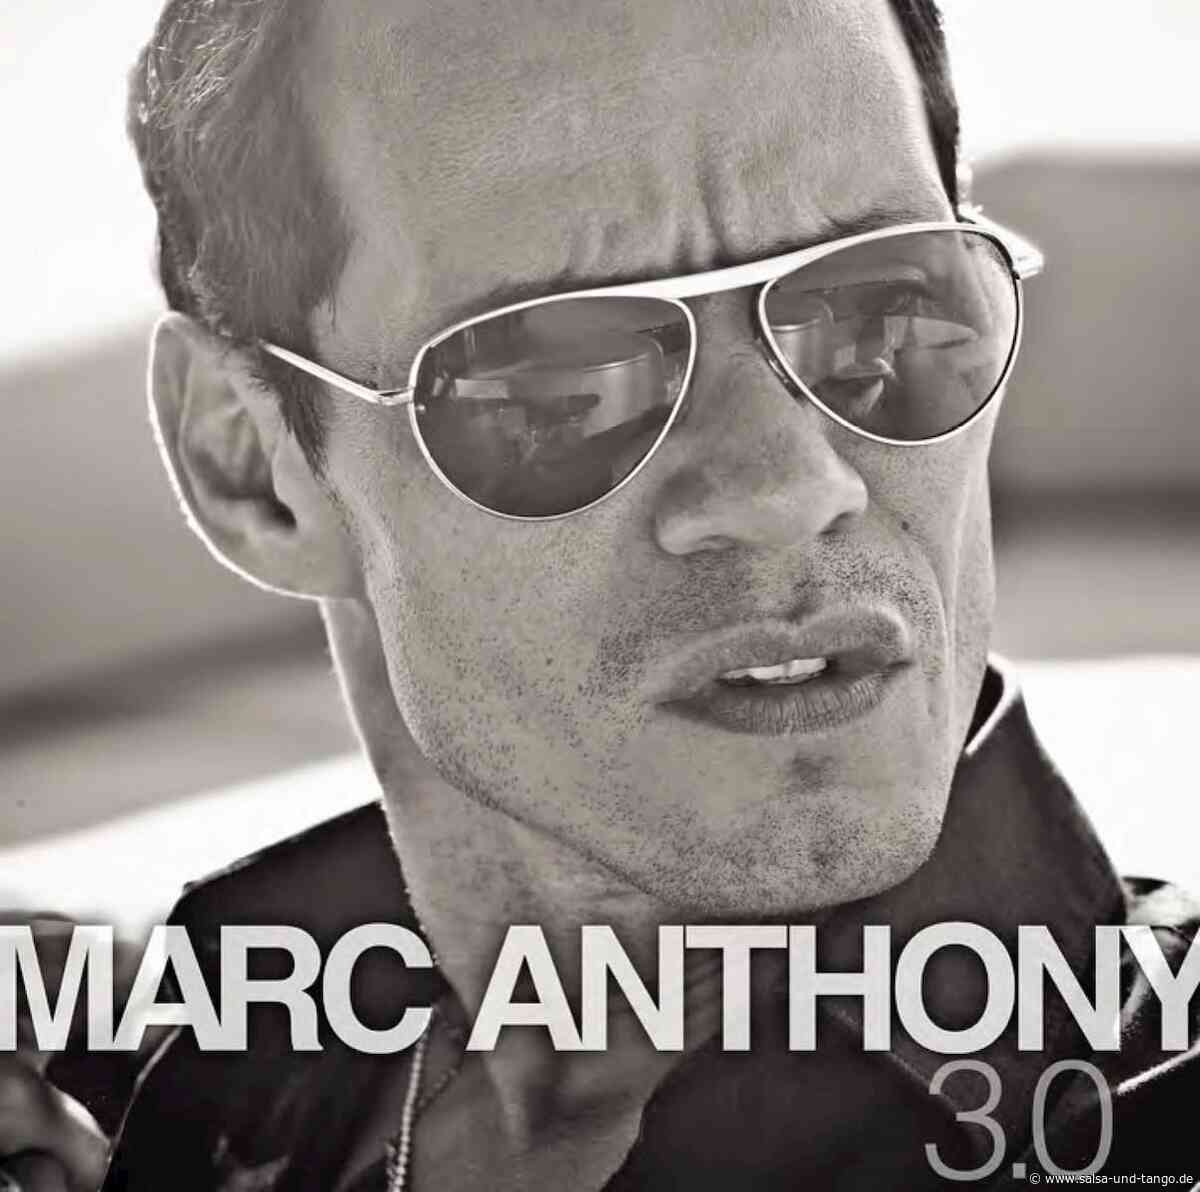 Erste Salsa-CD mit “Diamant”-Auszeichnung – Marc Anthony 3.0 erfolgreichstes Salsa-Album der Geschichte - Salsango